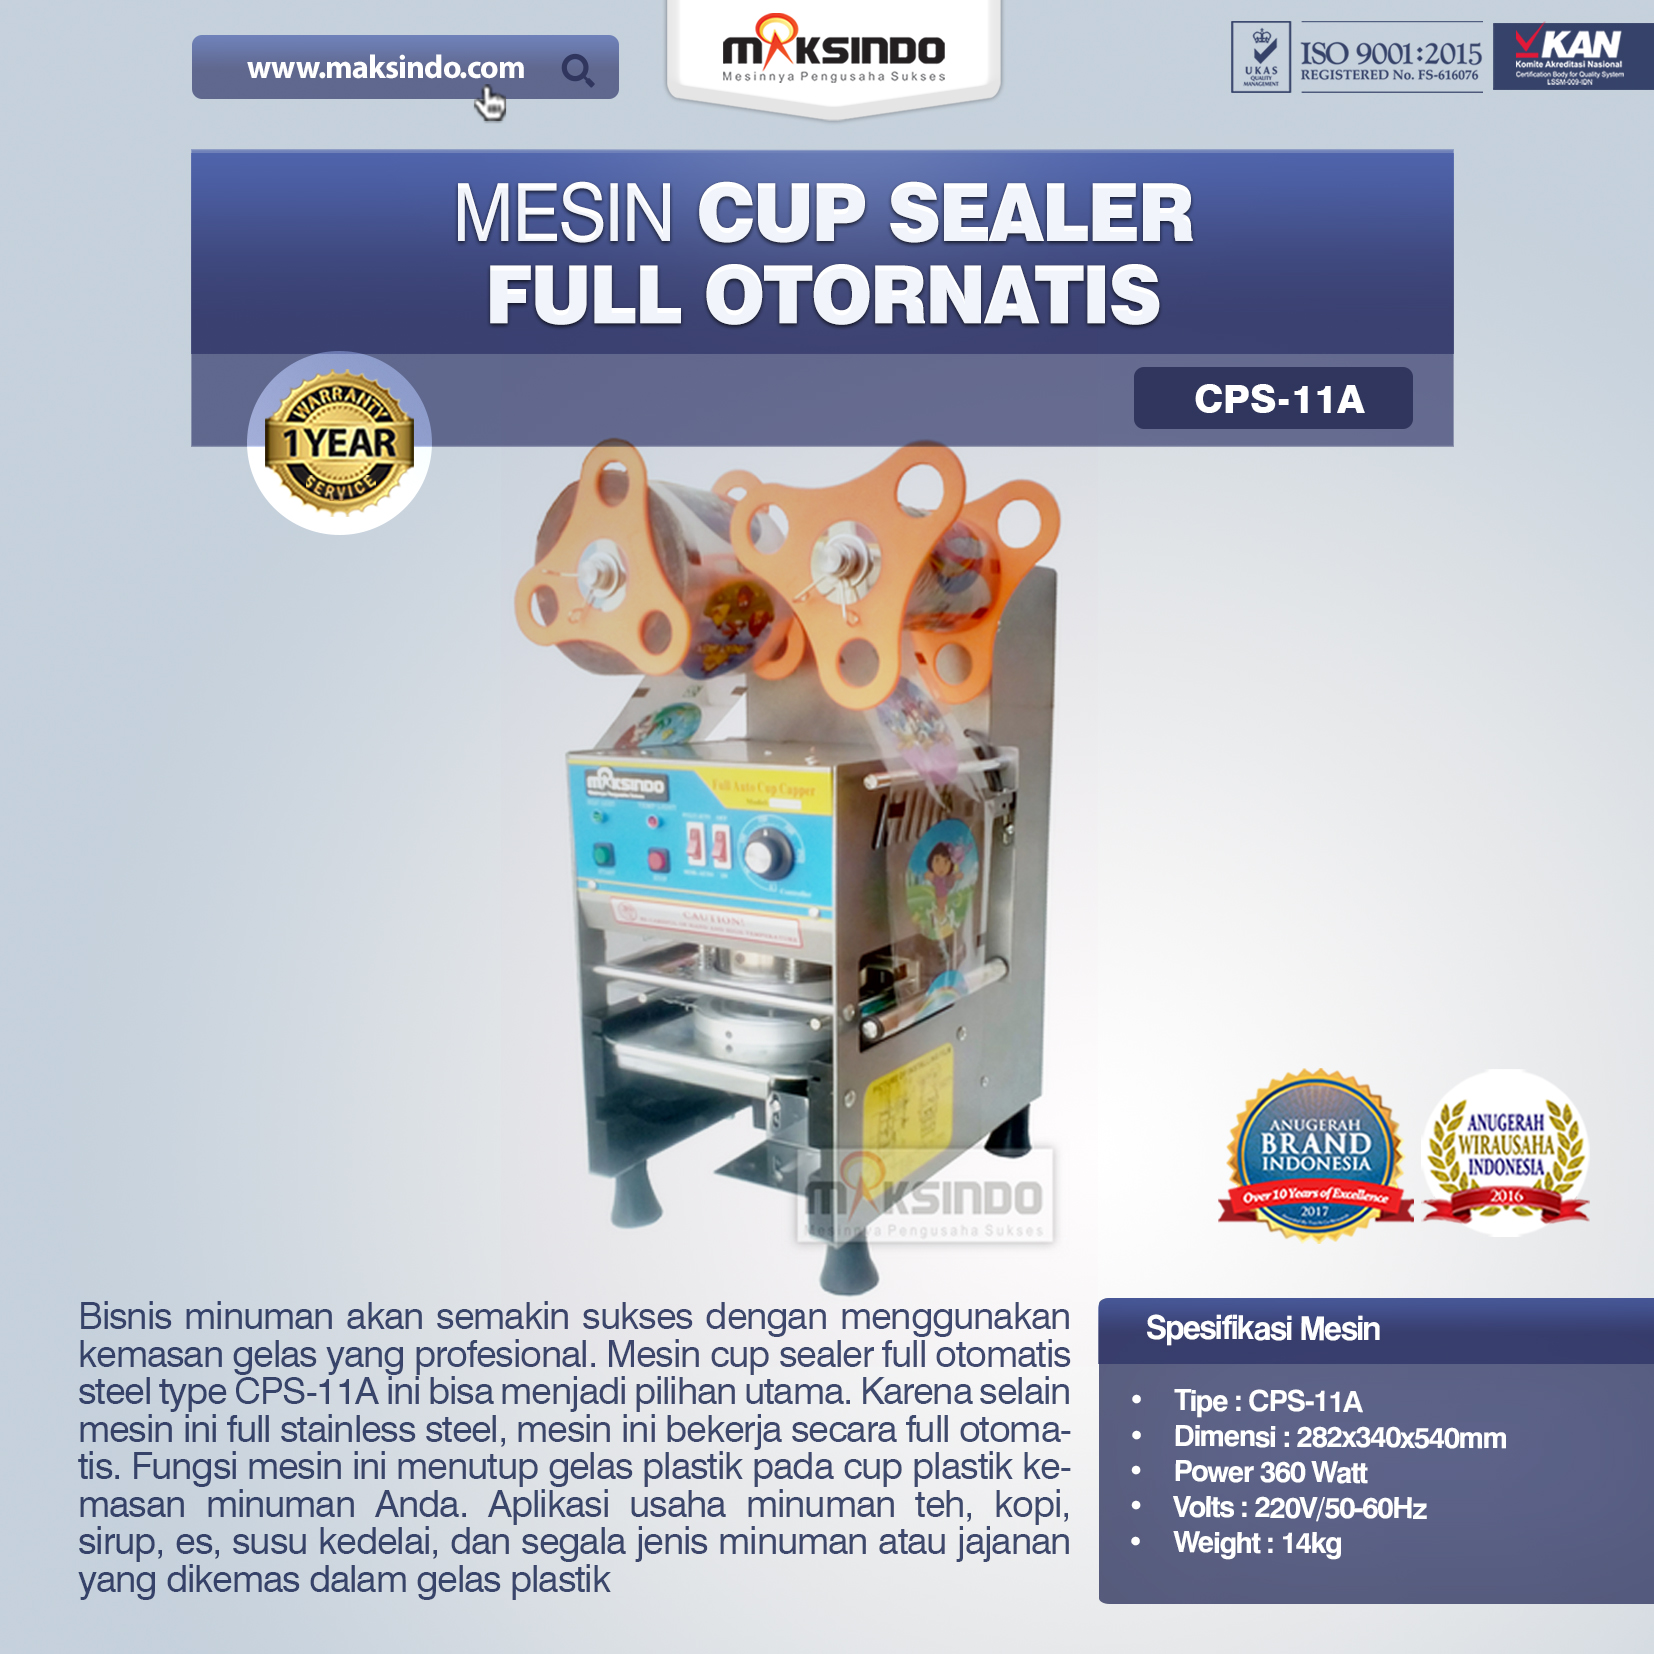 Jual Mesin Cup Sealer Full Otomatis (CPS-11A) di Semarang